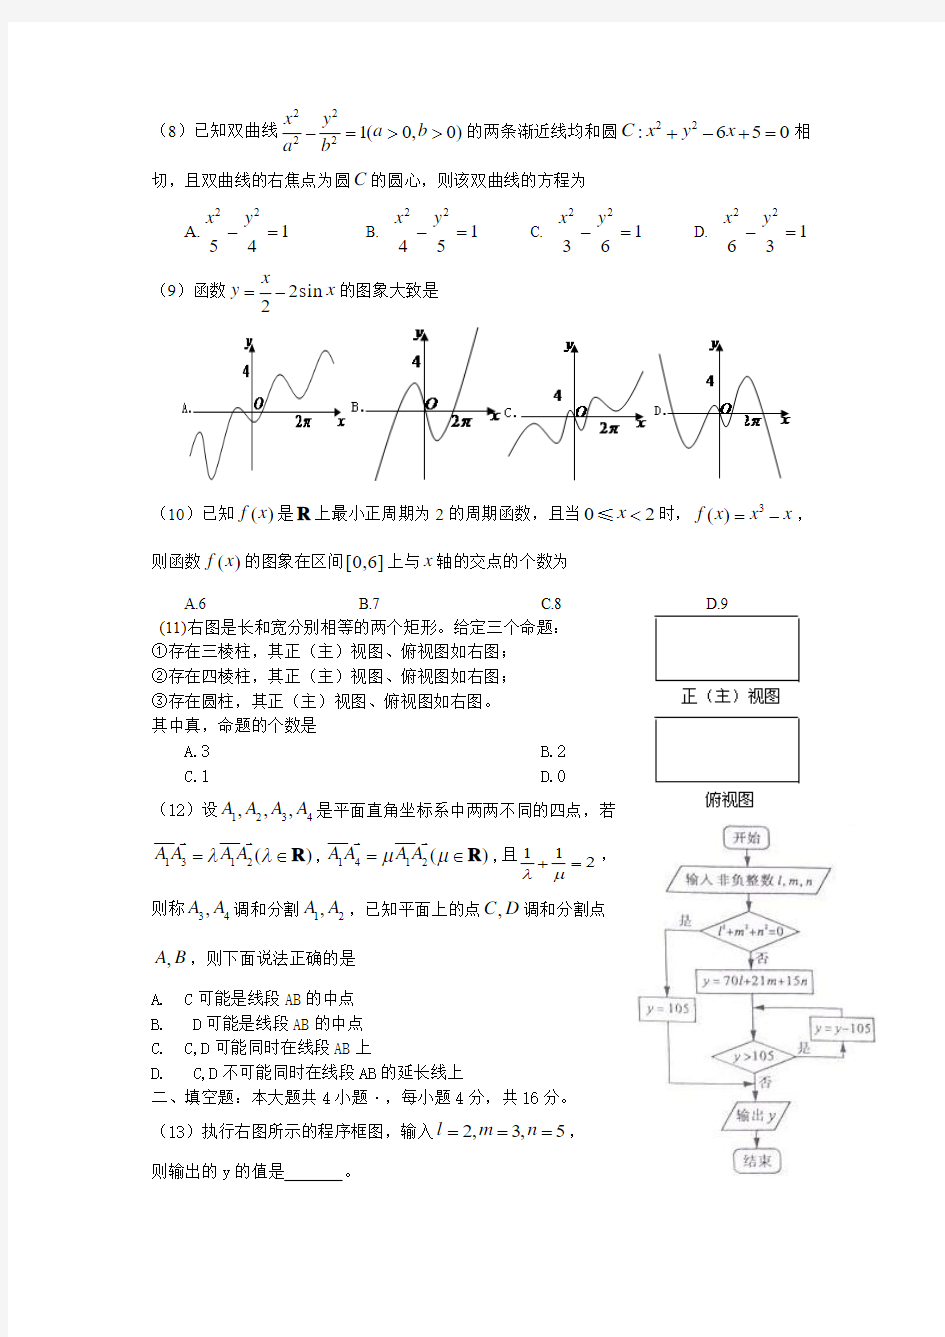 2011年高考理科数学(山东卷)